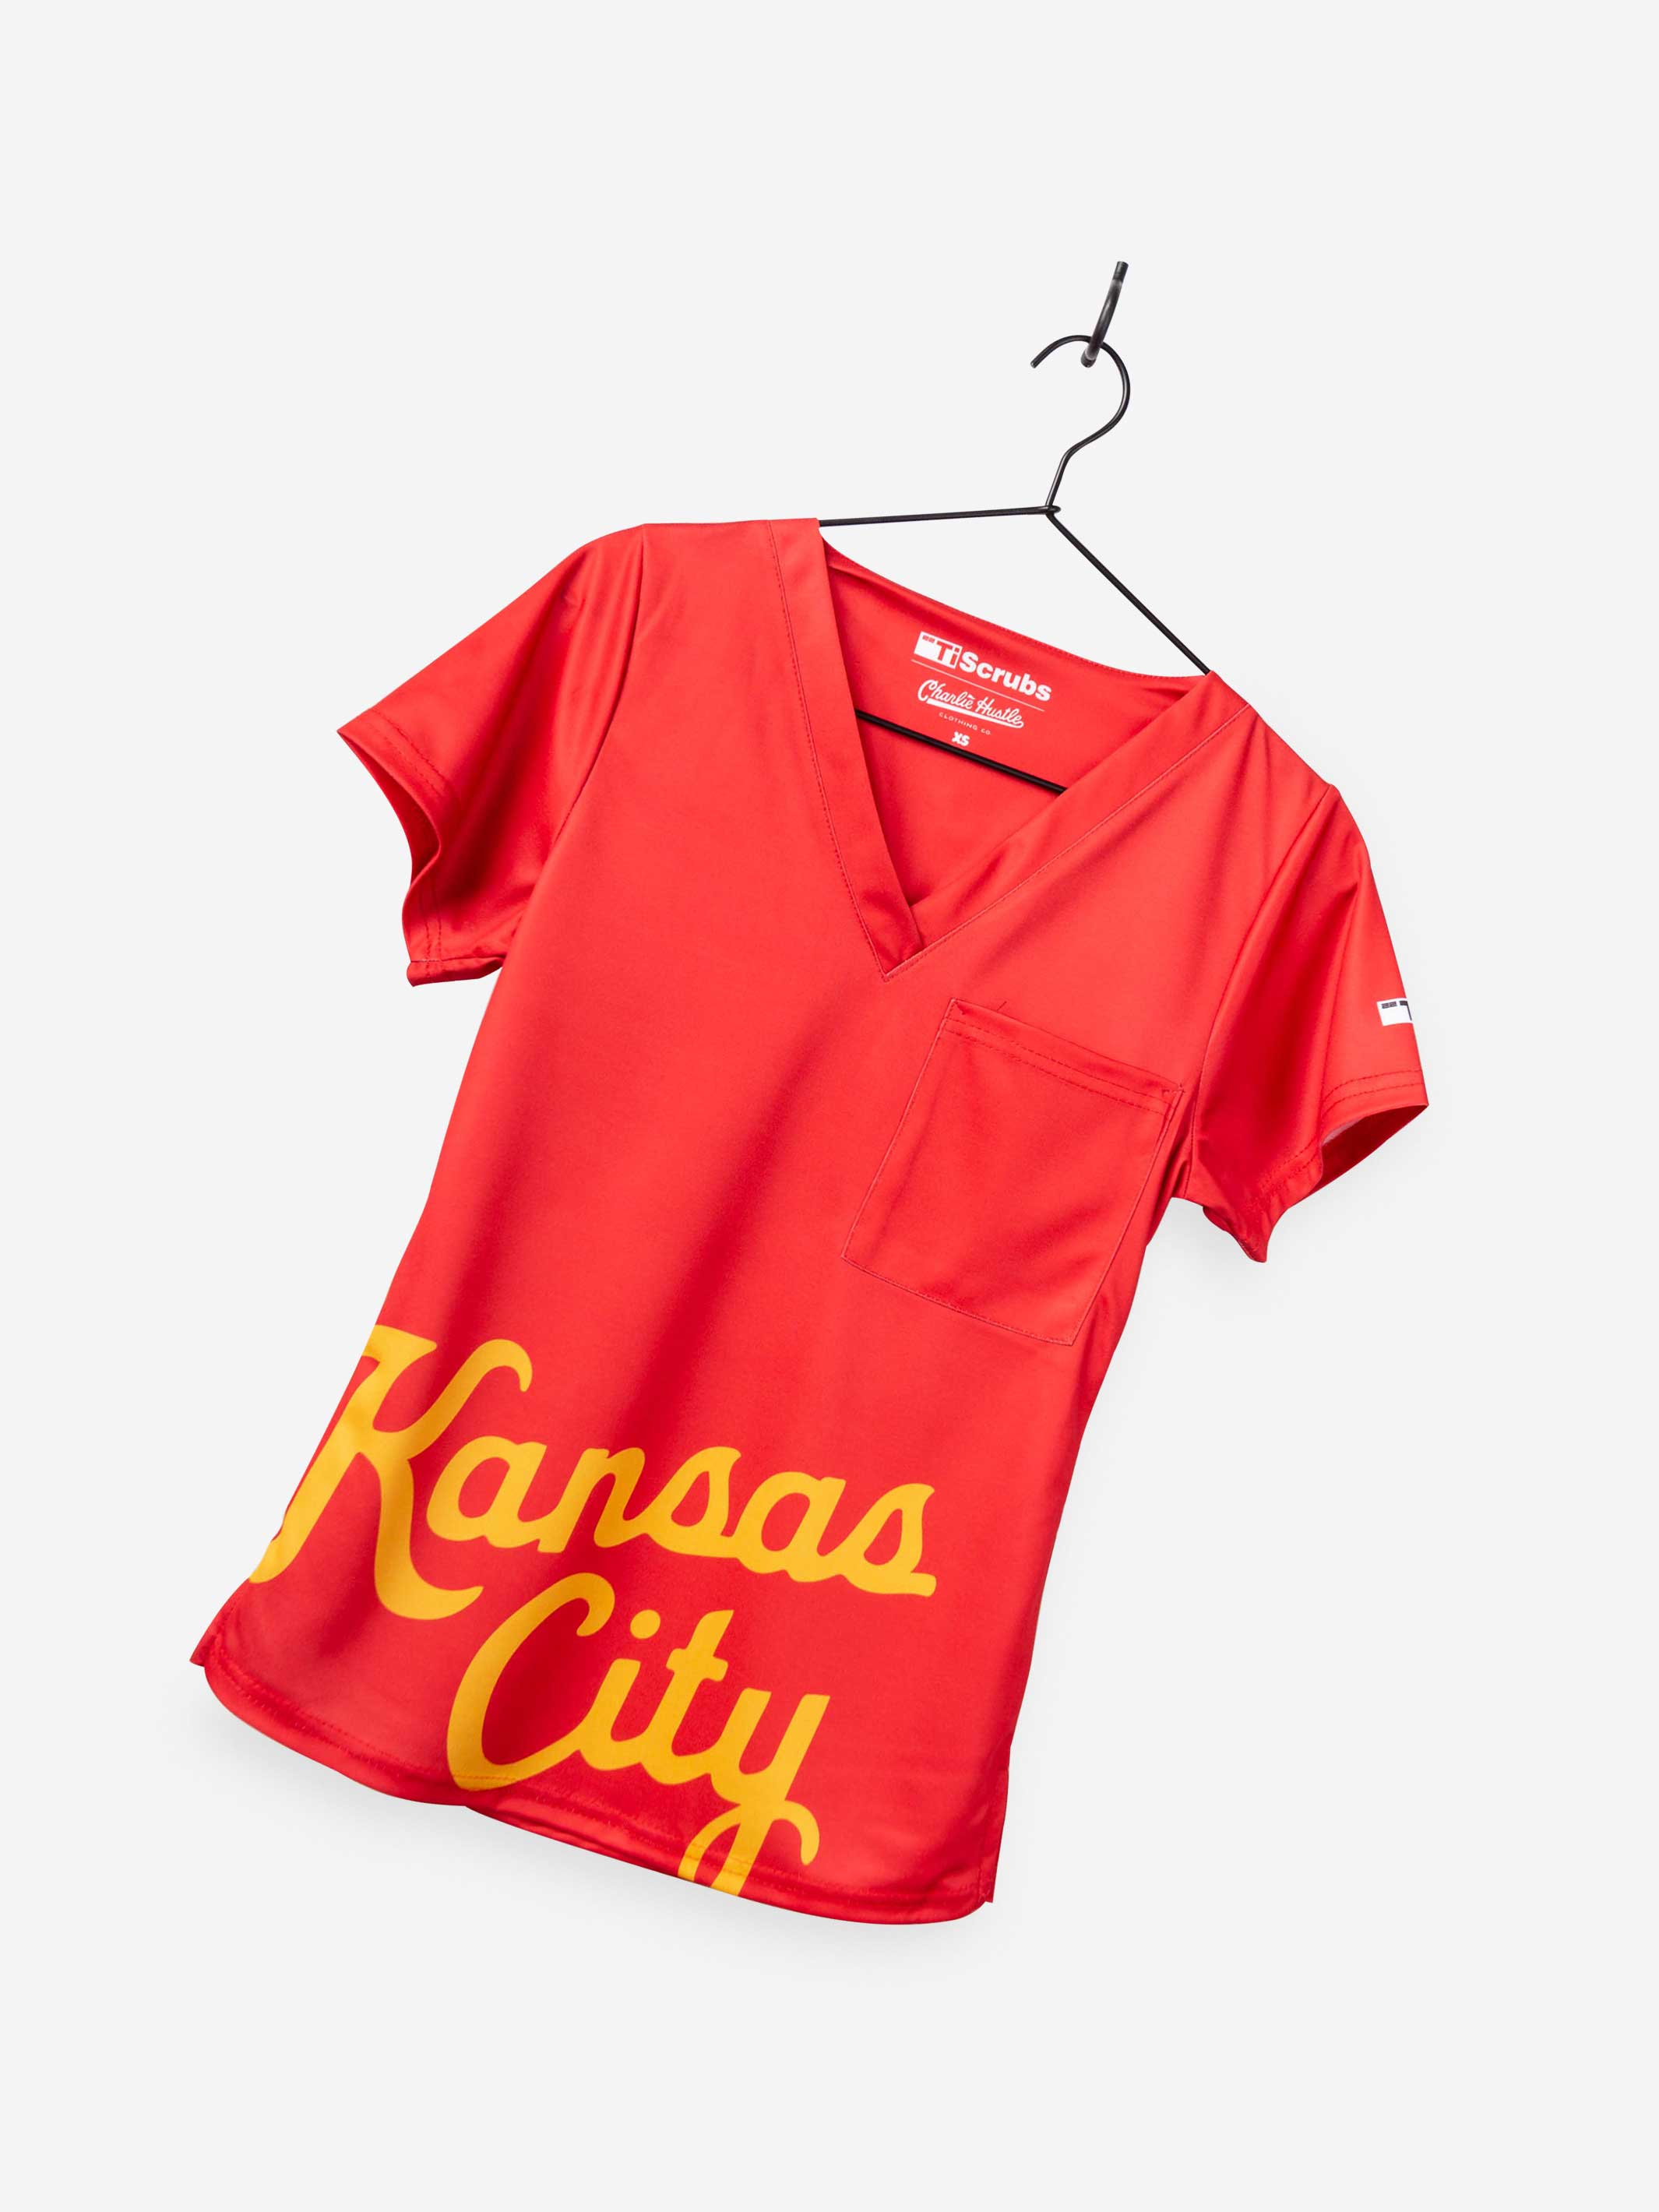 Current KC - Kansas City Current Unisex ...